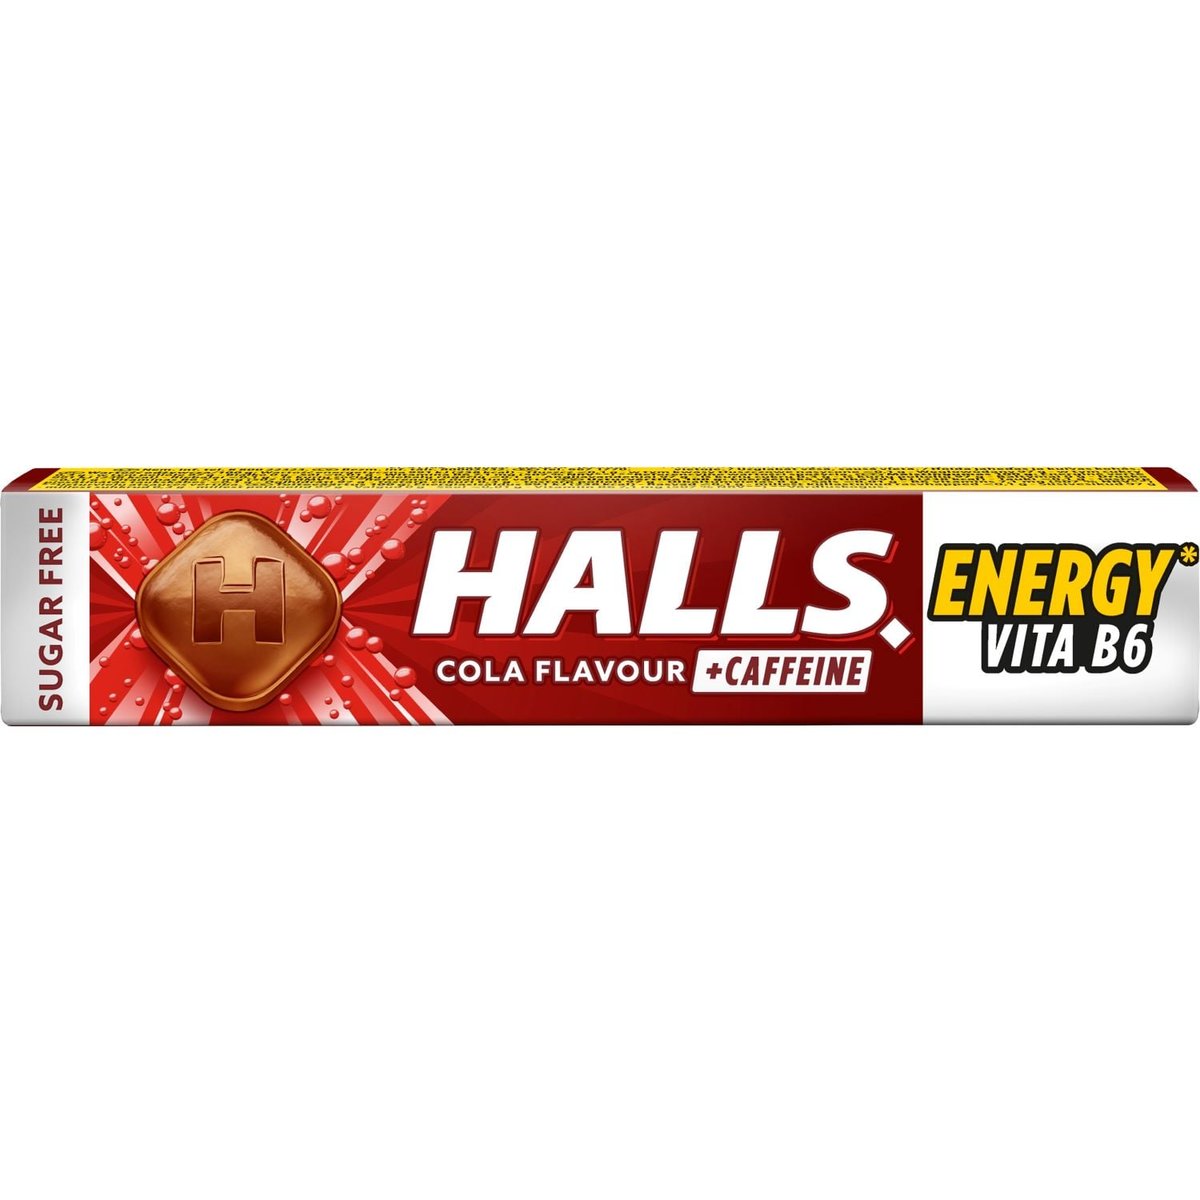 Halls Energy bonbóny s kolovou příchutí s vitaminem B6 a kofeinem